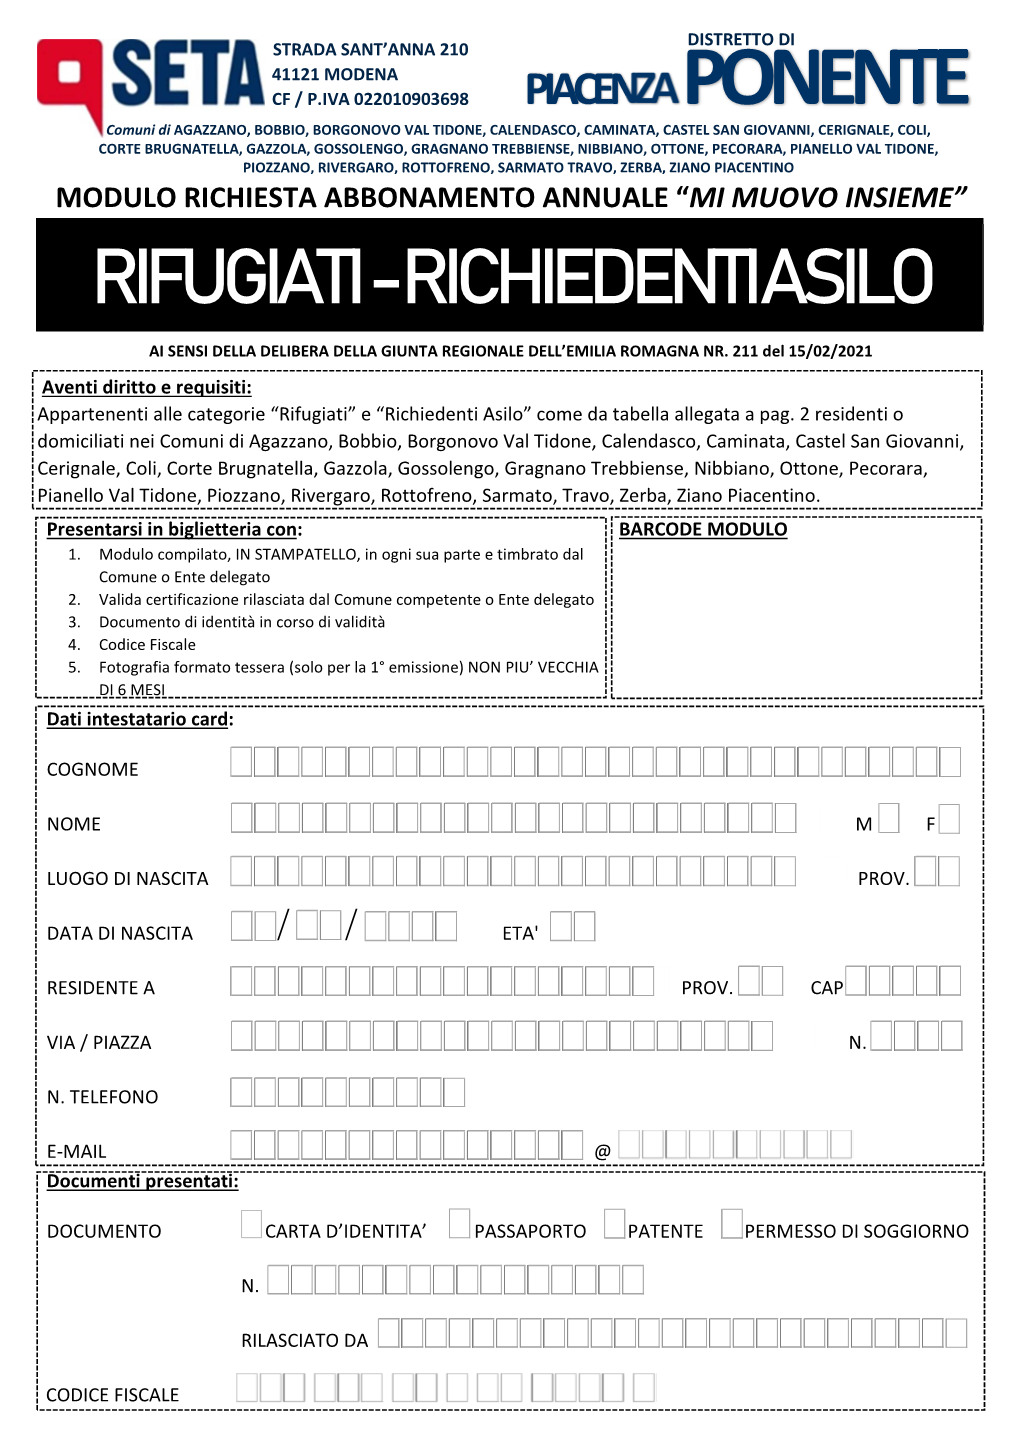 Modulo RIFUGIATI/RICHIEDENTI ASILO 2021